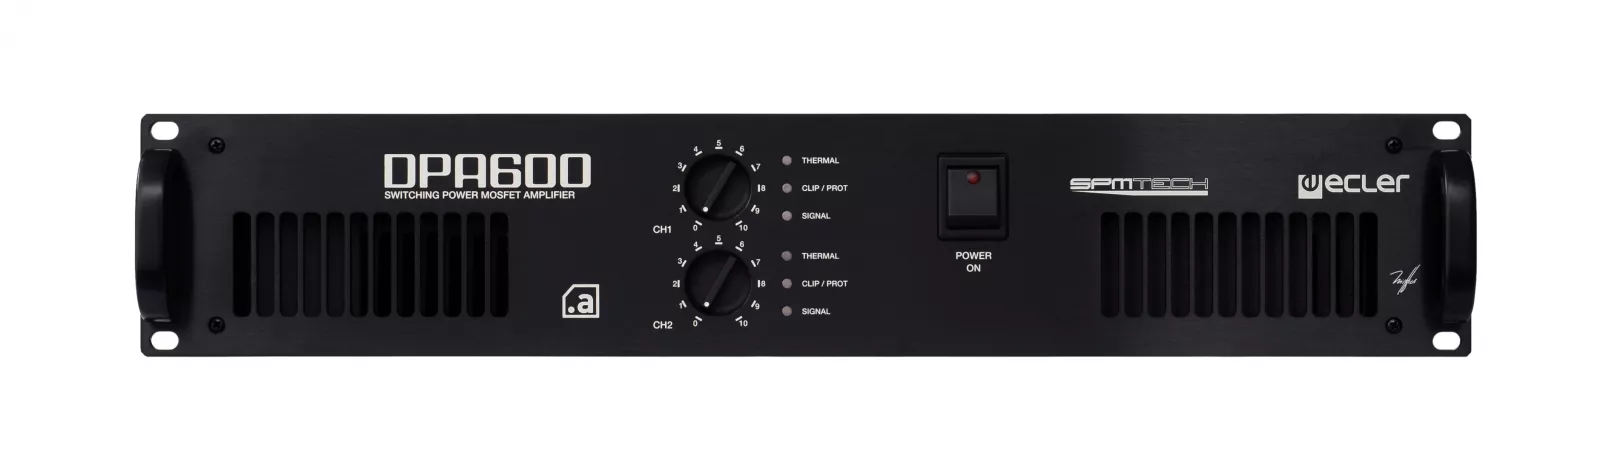 Amplificator Ecler DPA 600, [],audioclub.ro